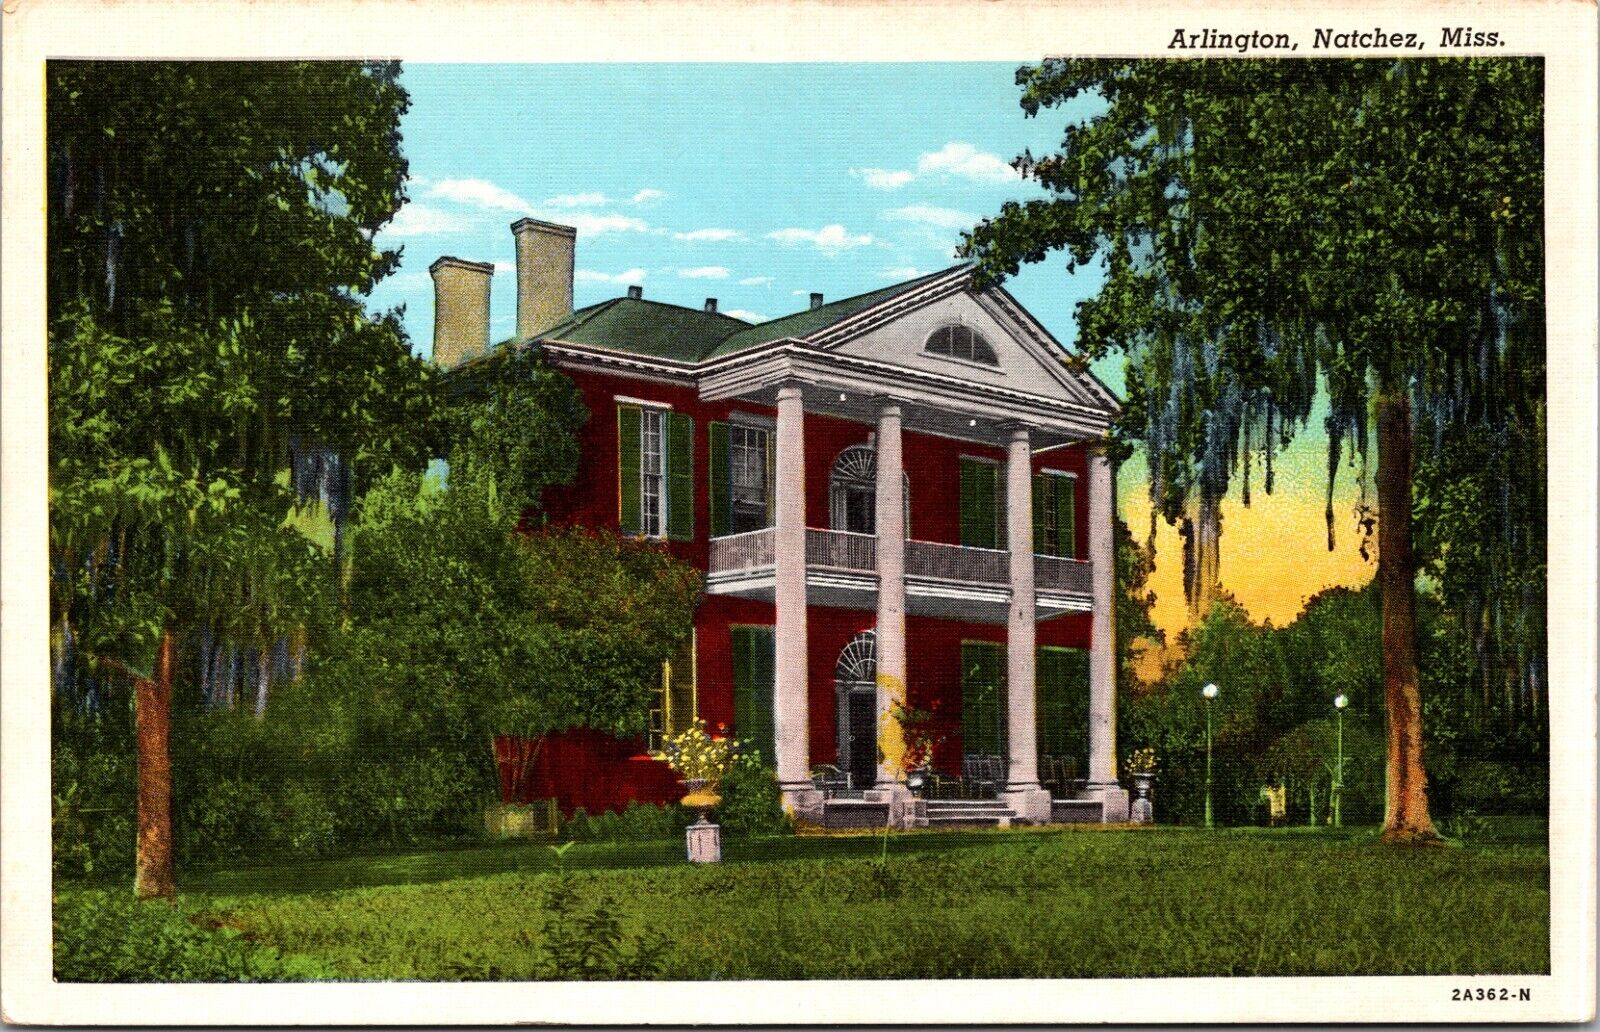 Arlington, Built in 1816, Natchez, Mississippi - Postcard